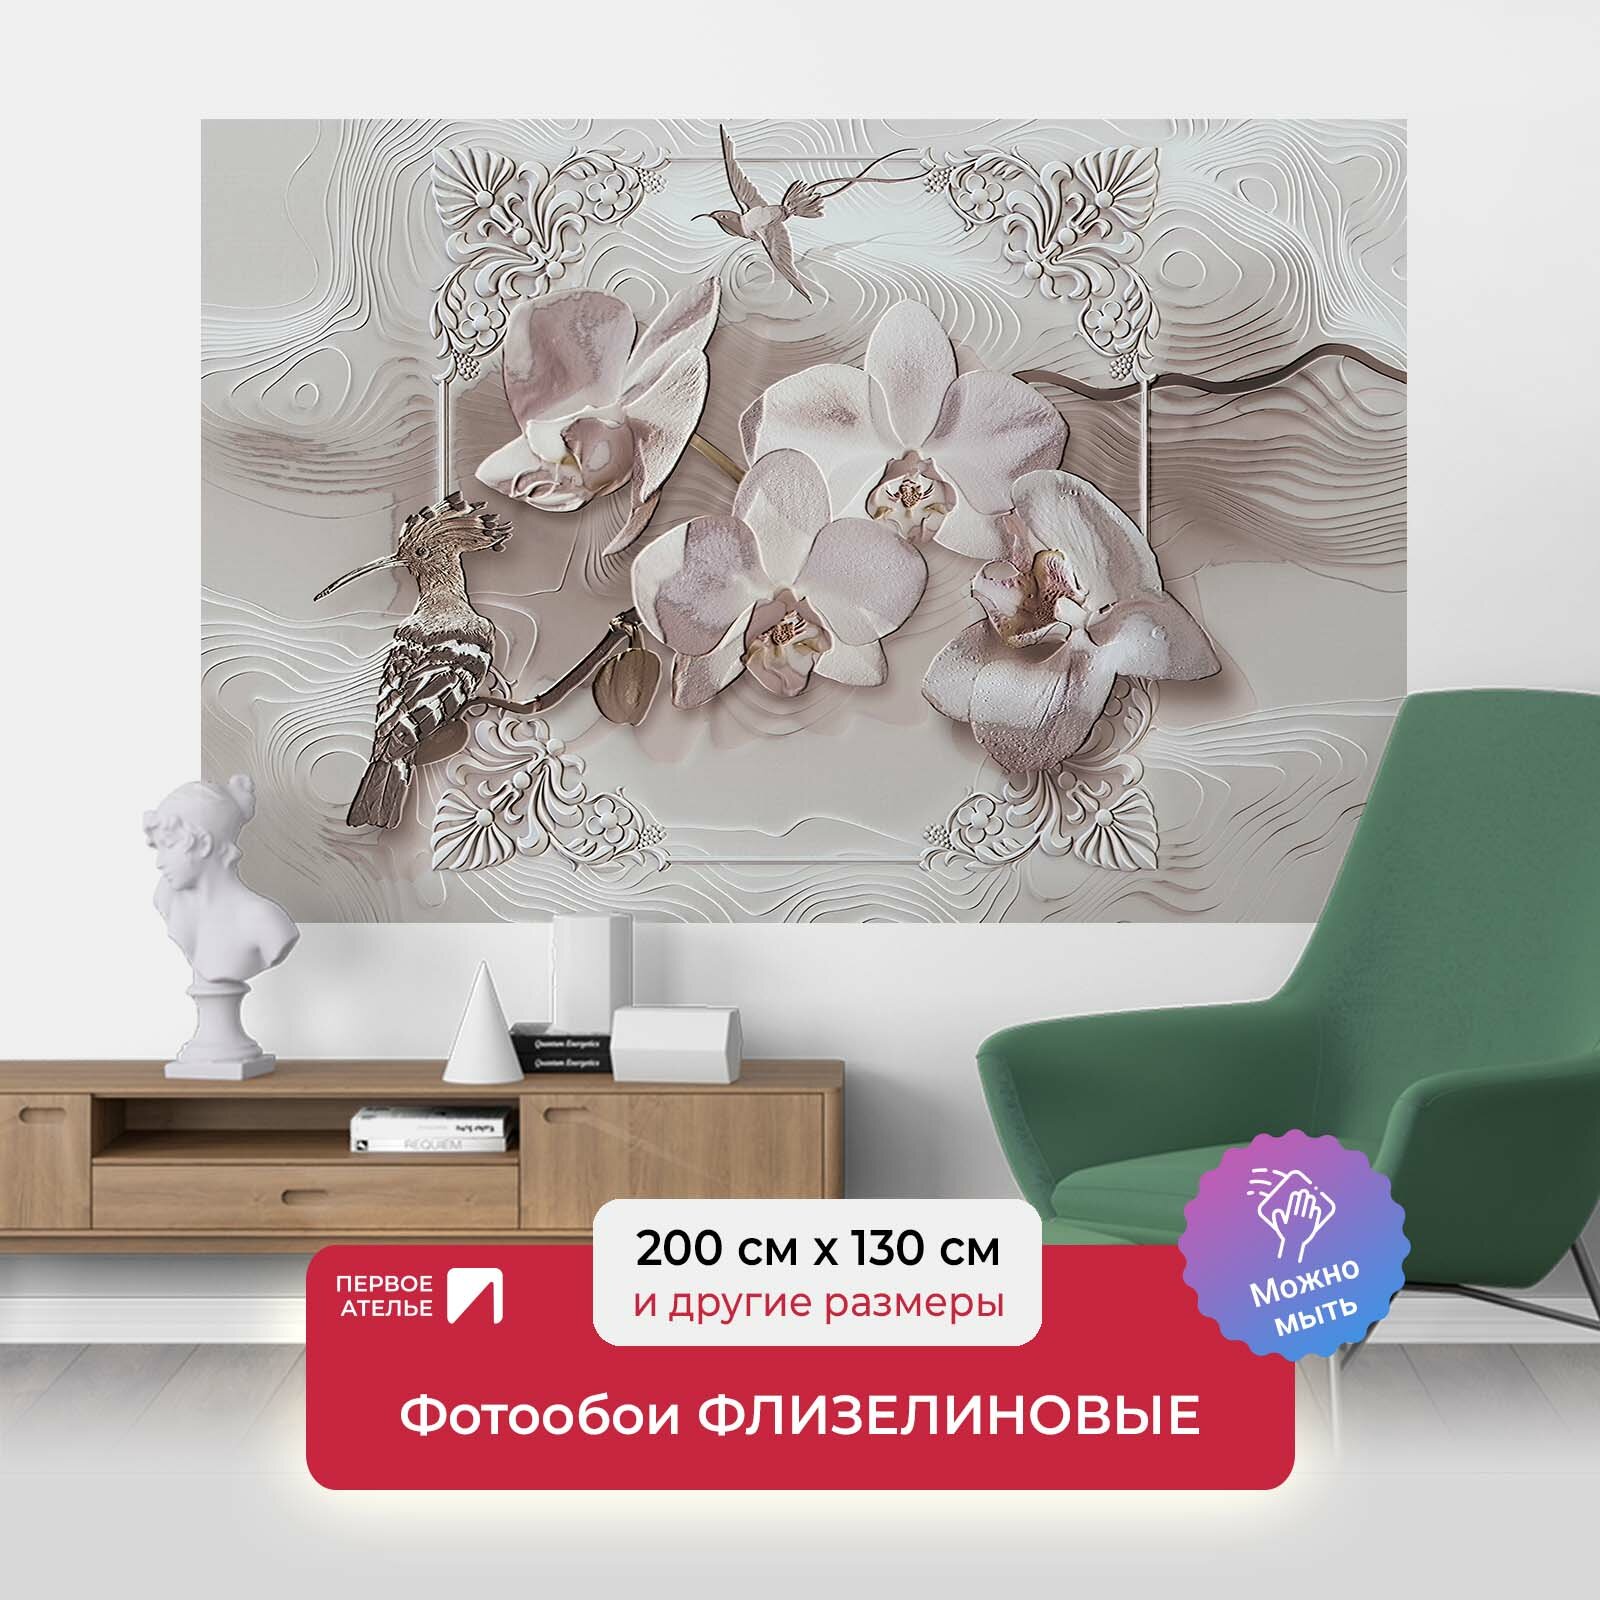 Фотообои на стену первое ателье "Удод и орхидея" 200х130 см (ШхВ), флизелиновые Premium